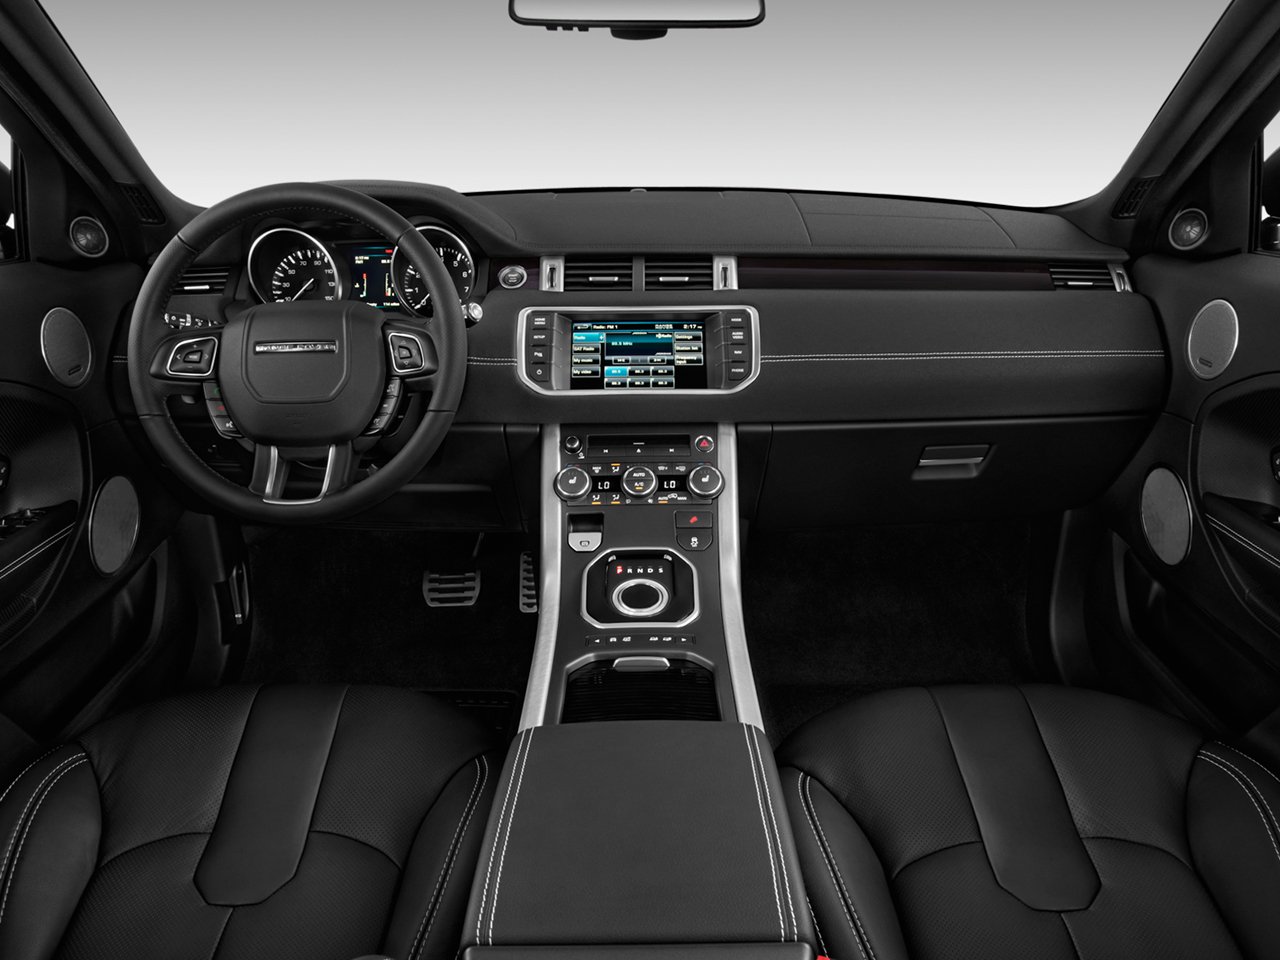 Chi tiết xe Land Rover Range Rover Evoque 2013